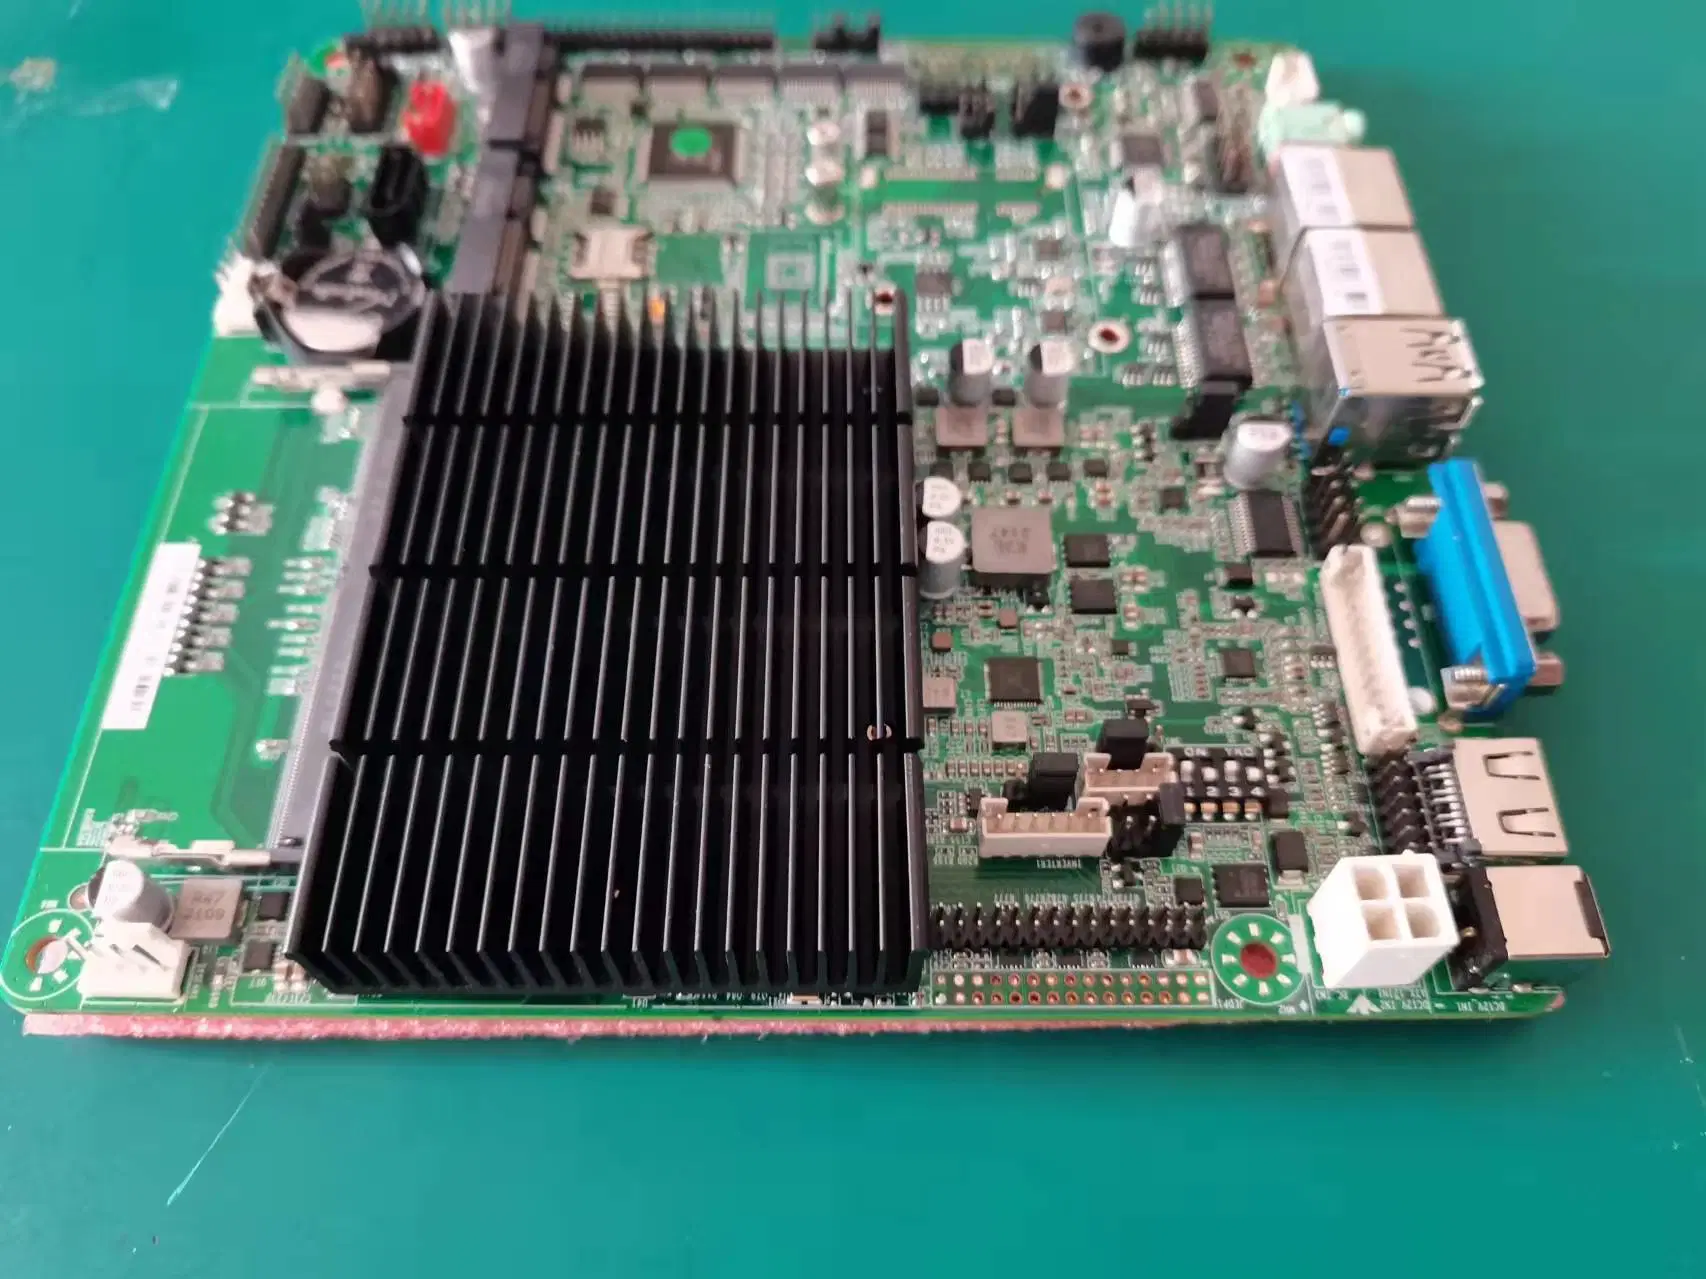 Intel J4125 Quad Core Fanless Thin Itx Motherboard, Mother Board, Main Board